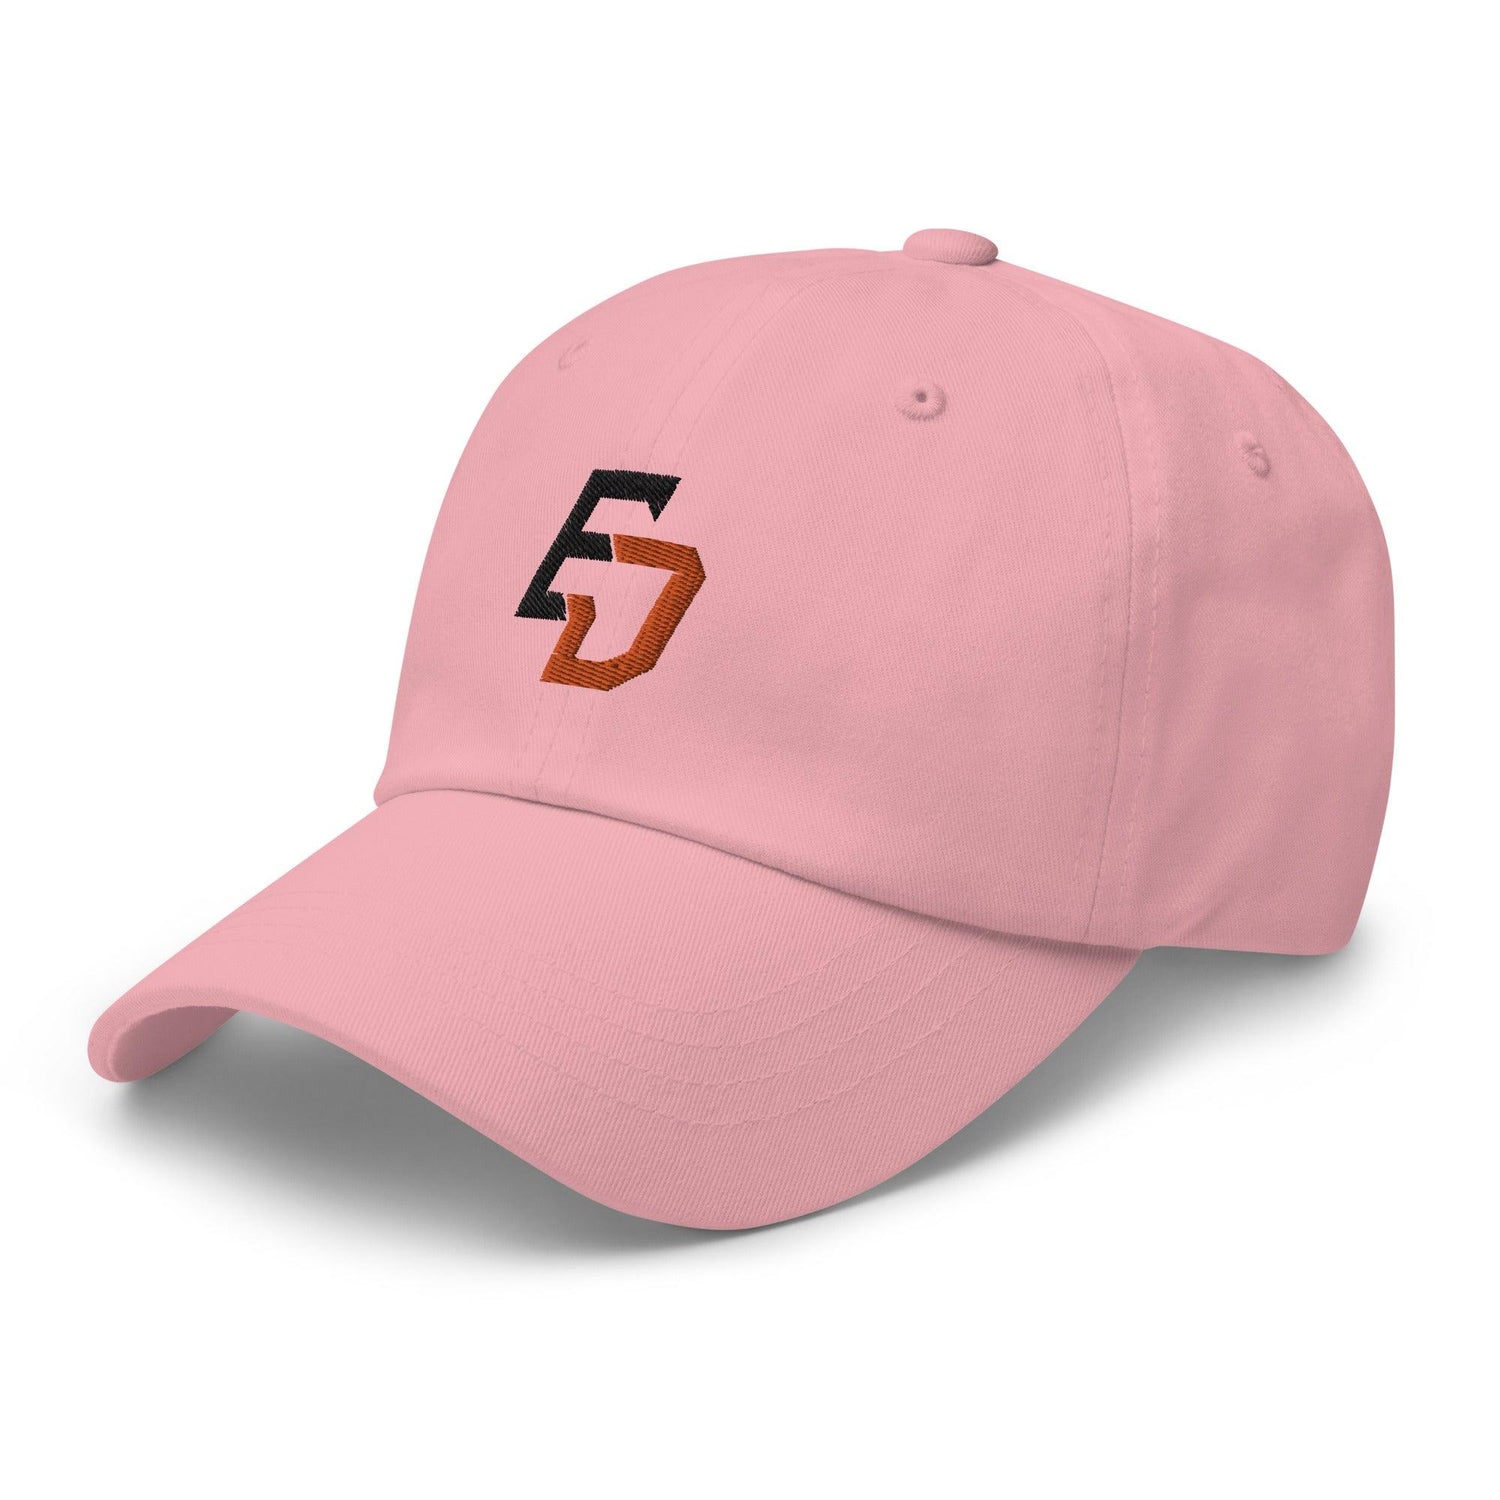 Ernie Day "Essential" hat - Fan Arch